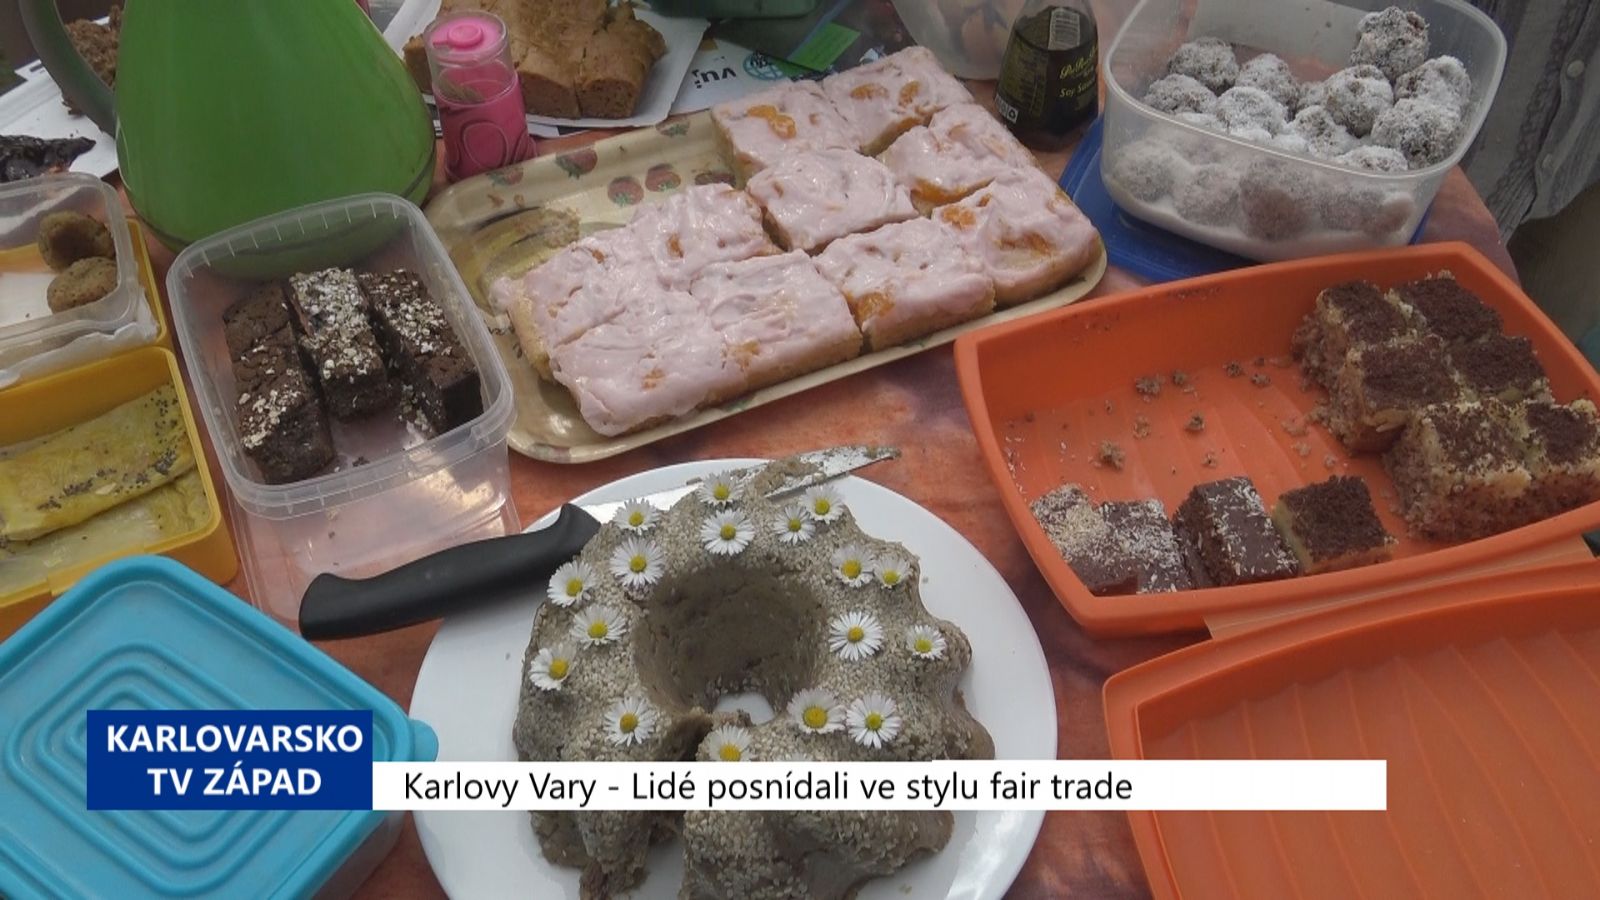 Karlovy Vary: Lidé posnídali ve stylu fair trade (TV Západ)